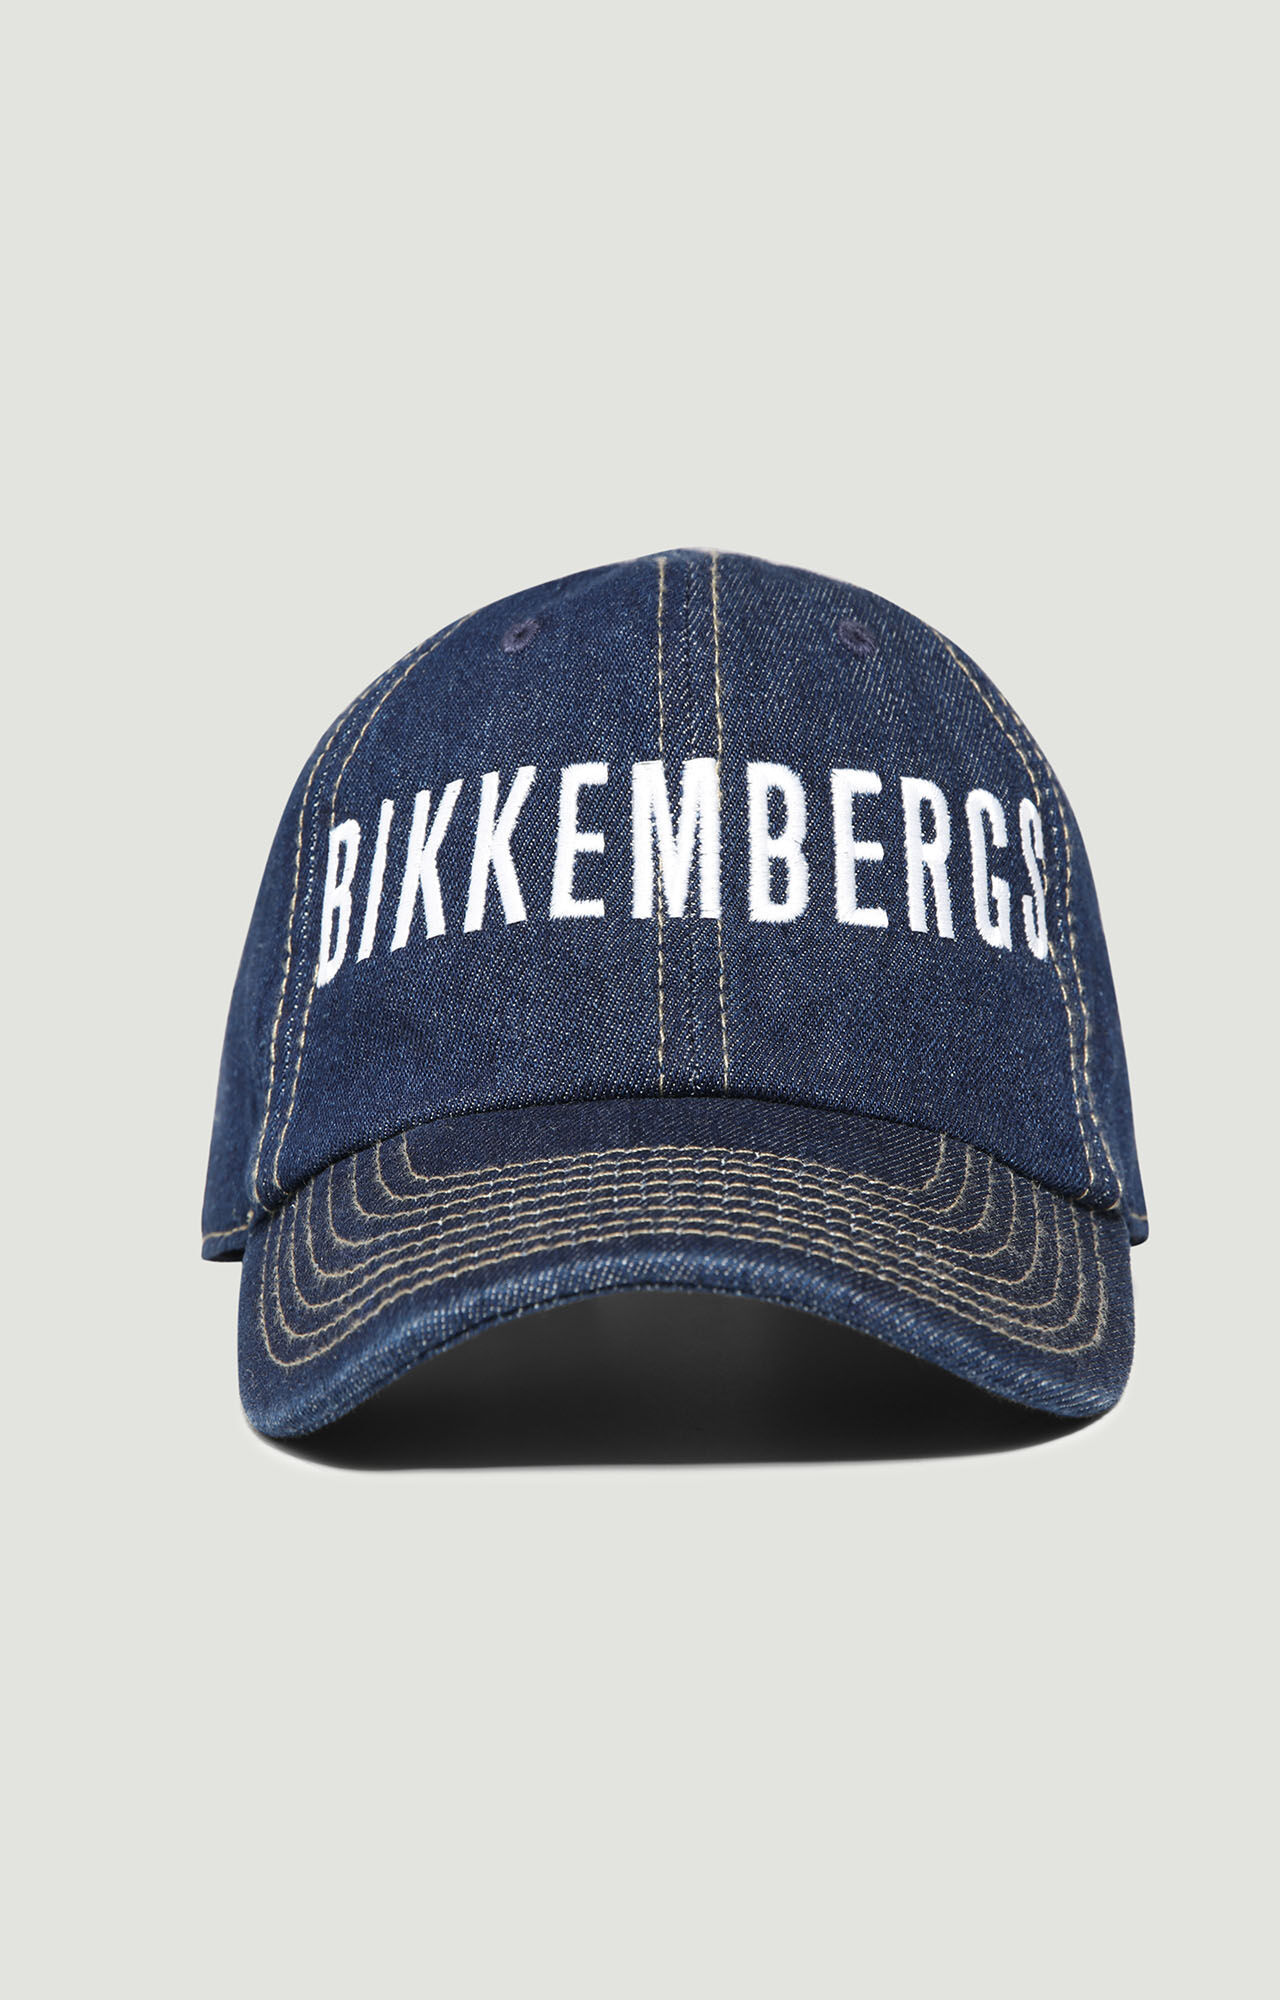 Cappello cuffia hat BIKKEMBERGS 01330 taglia UNICA colore 001 BORDEAUX 